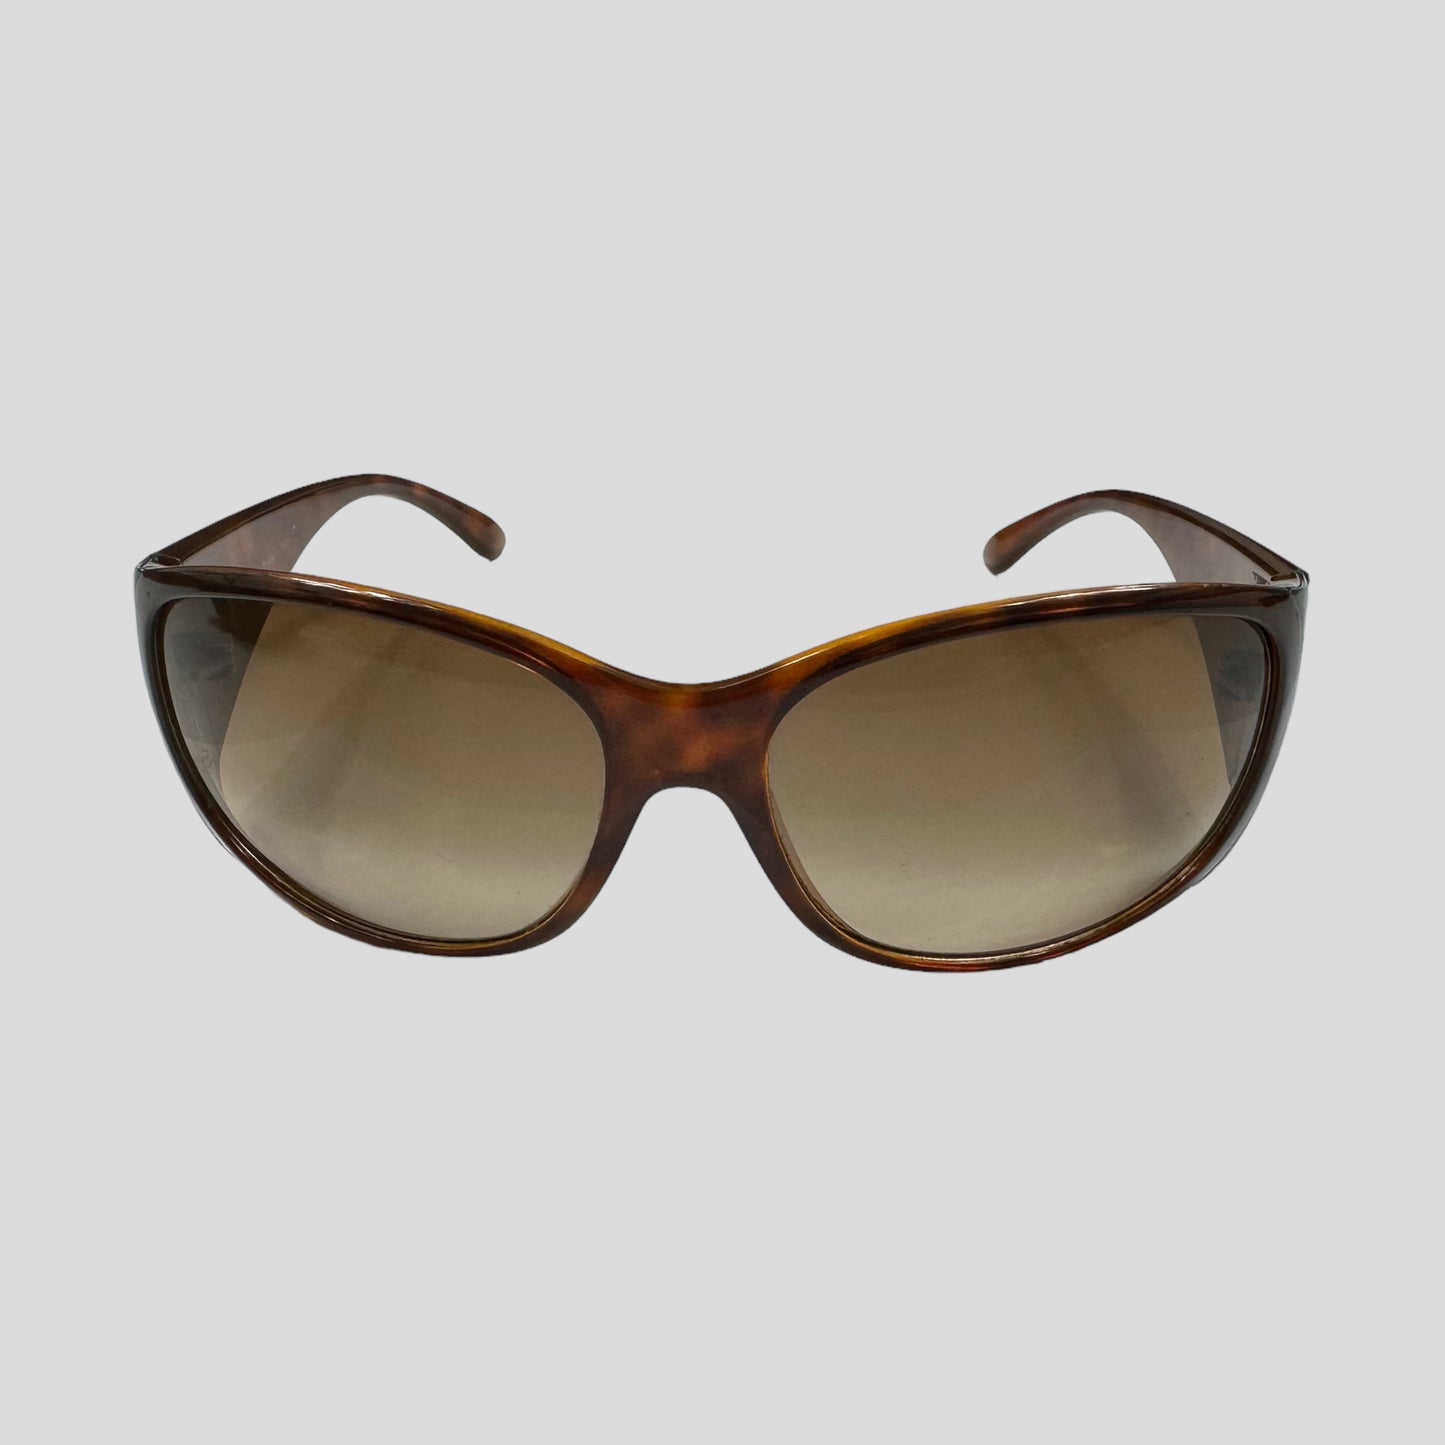 Prada Milano Tortoiseshell Wraparound Sunglasses